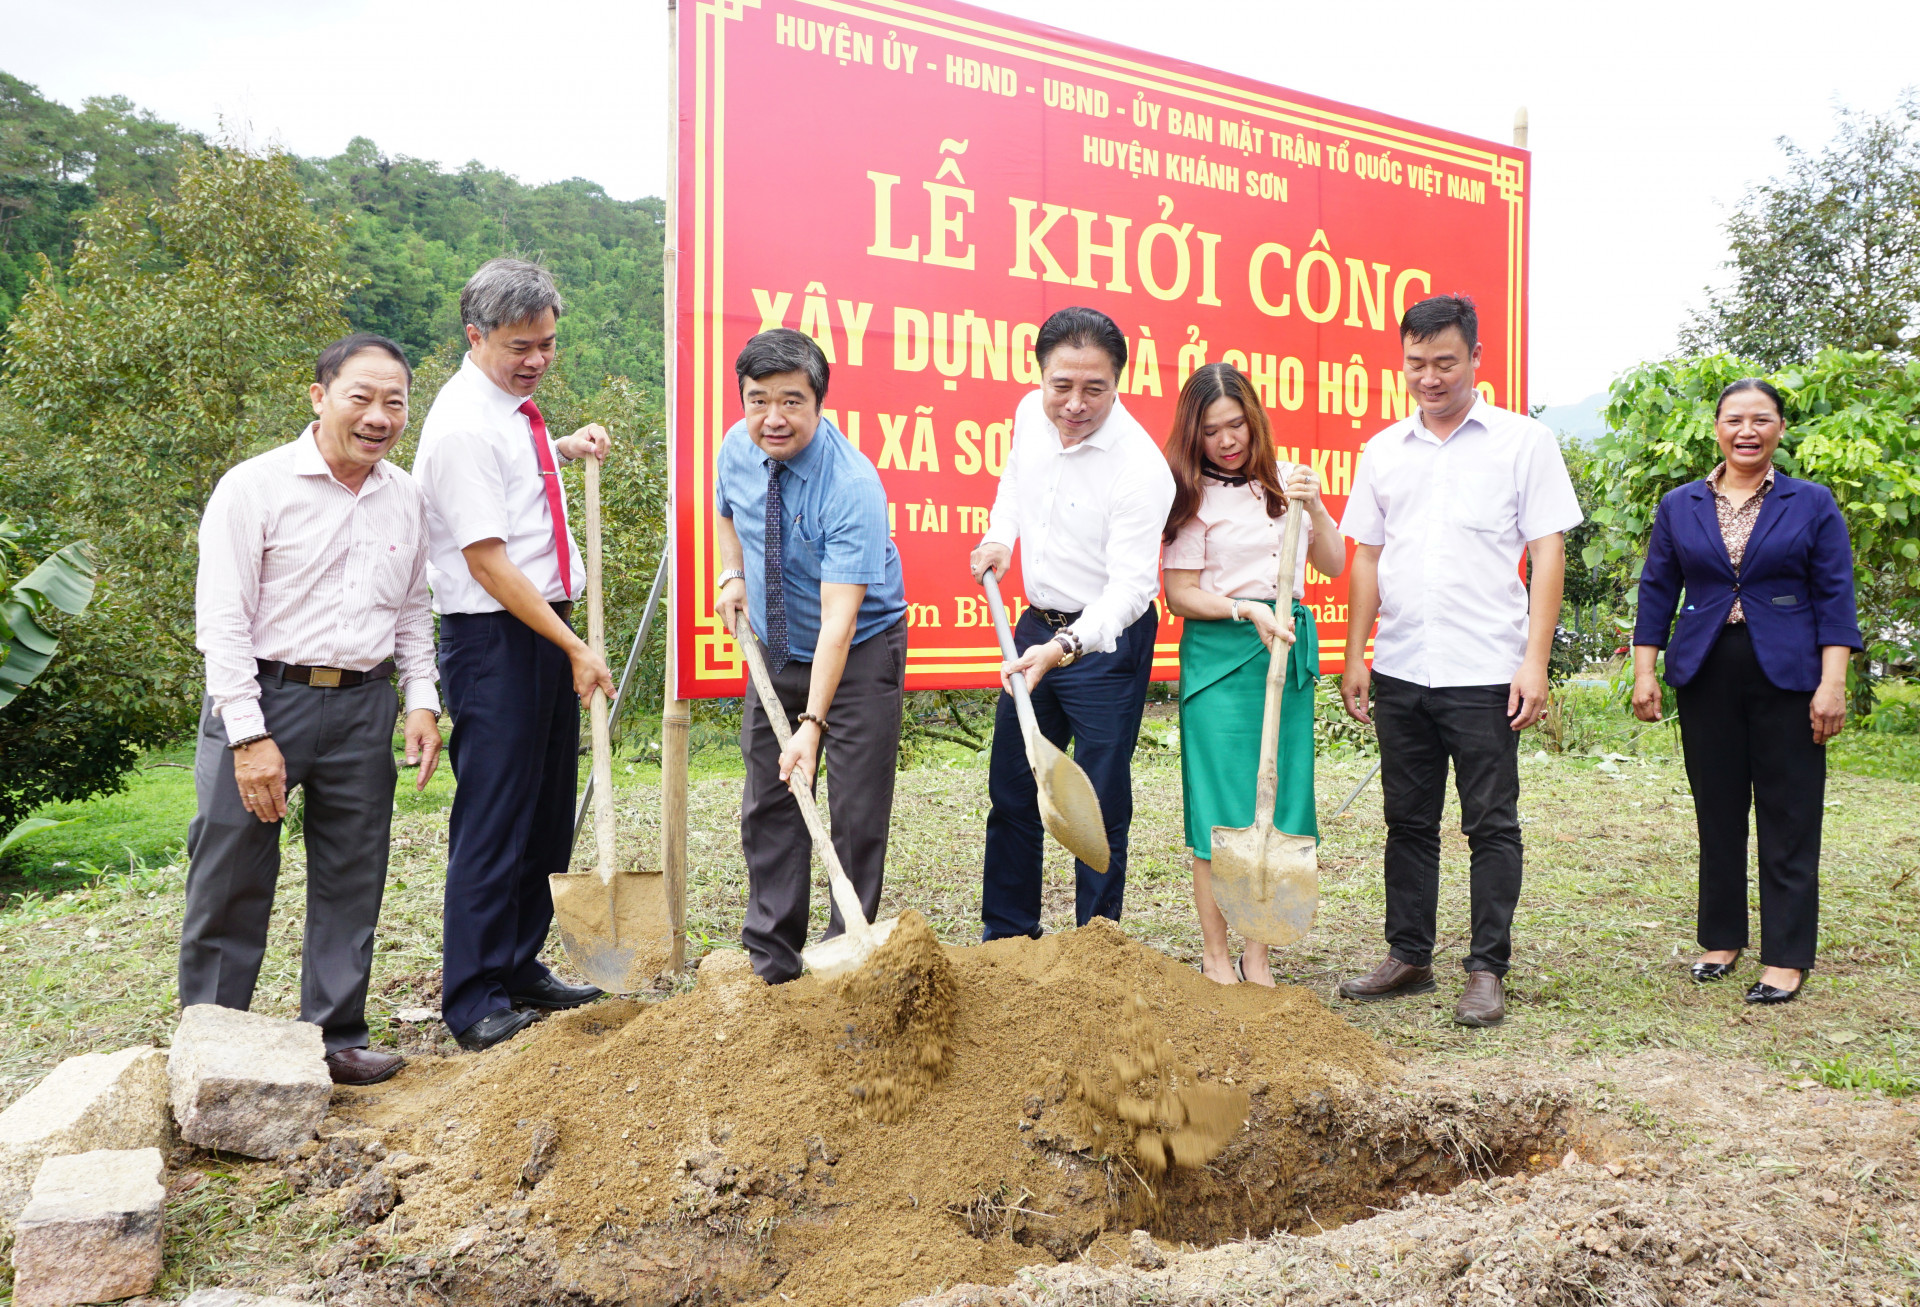 Đồng chí Nguyễn Khắc Toàn và các đại biểu thực hiện nghi thức động thổ, khởi công xây dựng nhà ở cho hộ nghèo xã Sơn Bình